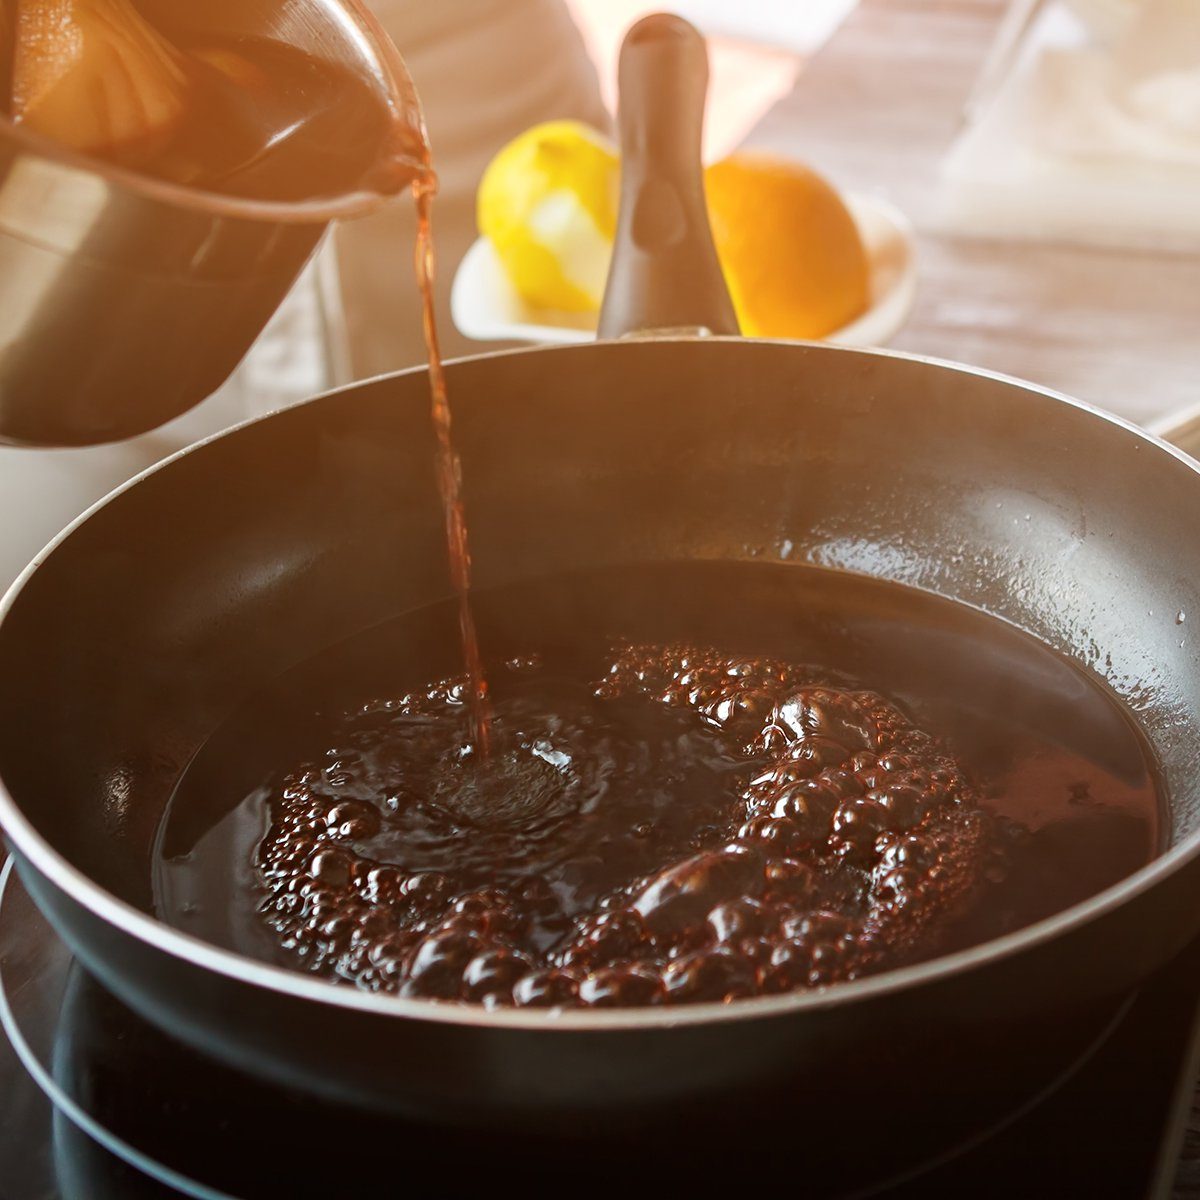 Liquid flowing onto frying pan